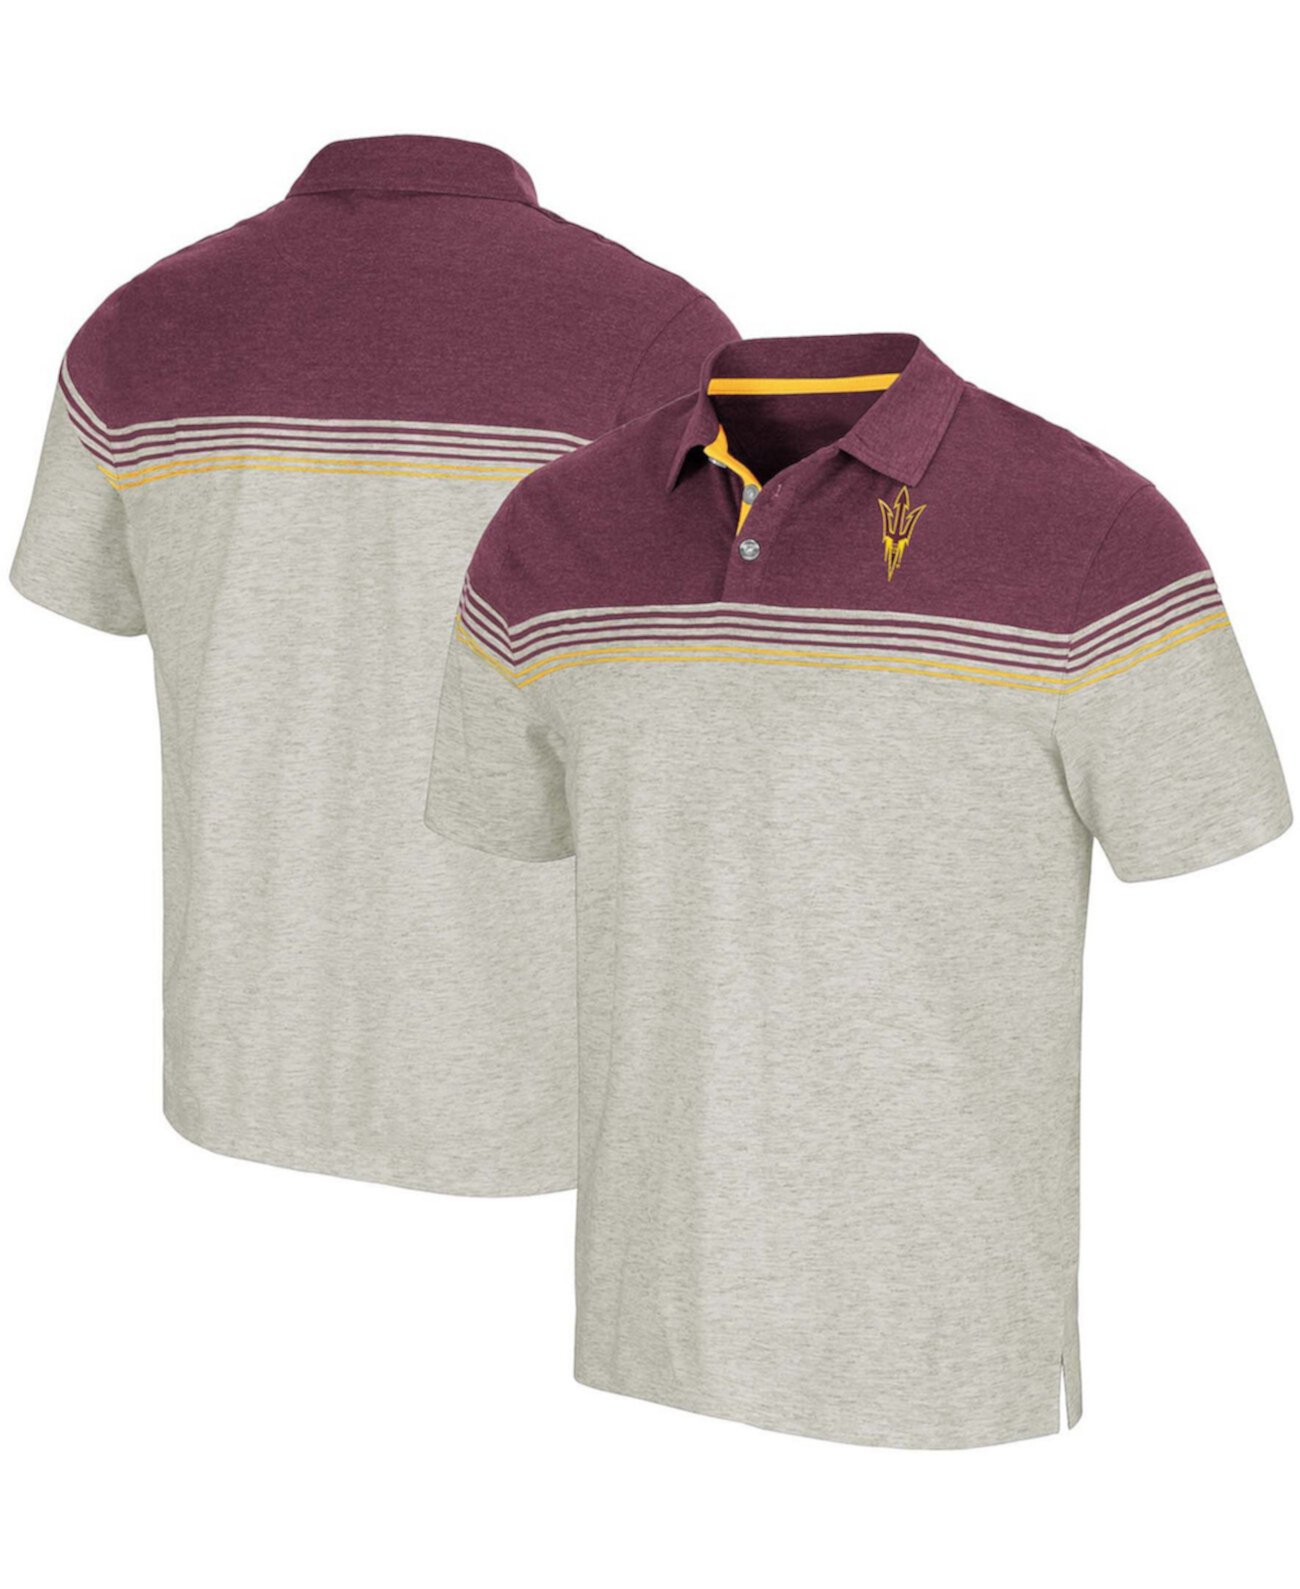 Мужская рубашка-поло из овсяной каши и темно-бордового цвета Arizona State Sun Devils Hill Valley Colosseum